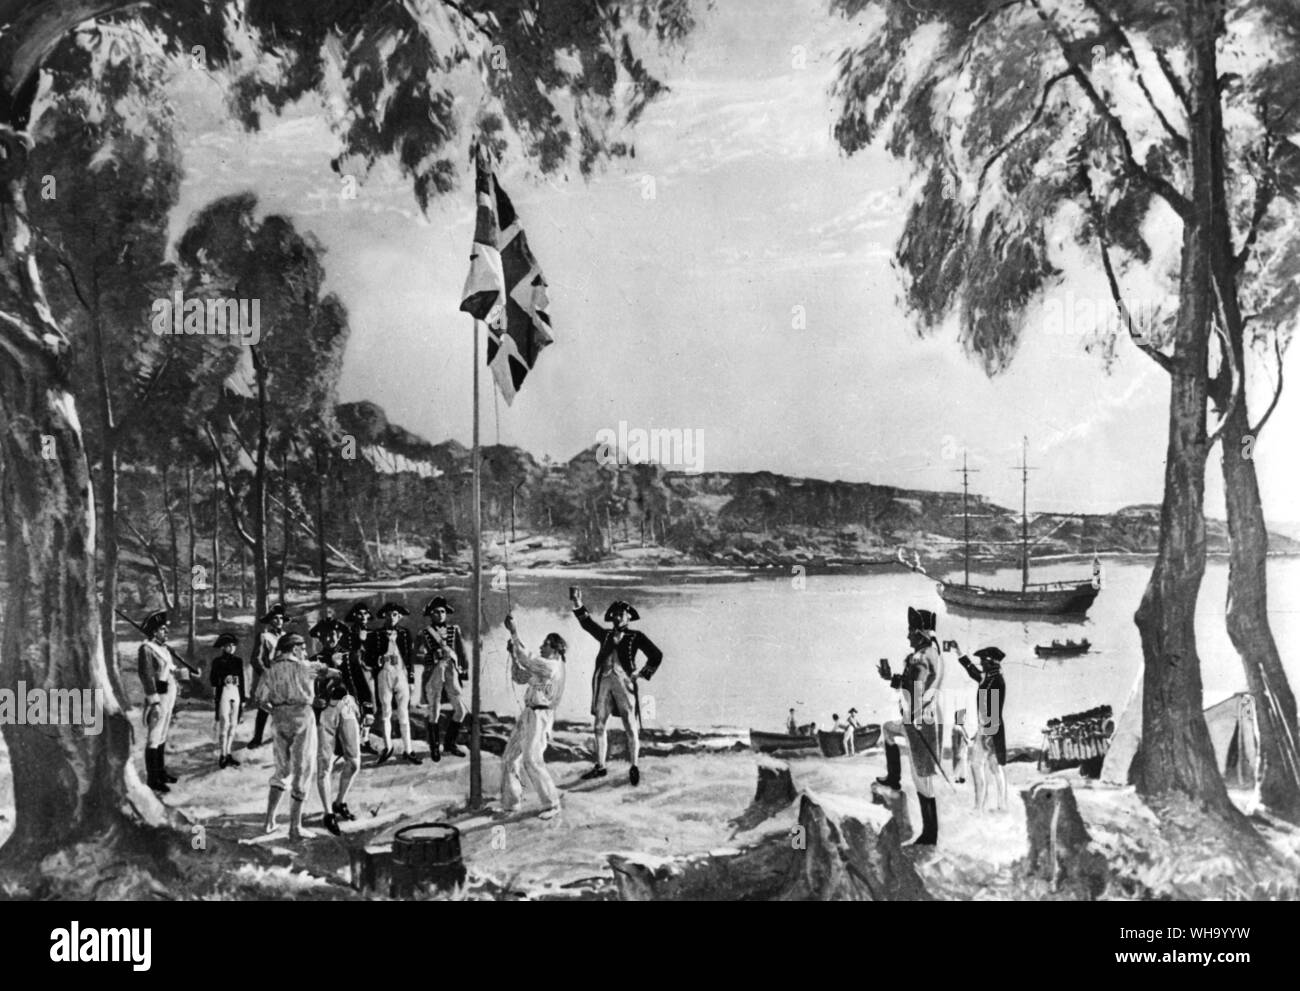 Die Gründung von Australien. Szene an der Entfaltung der britischen Flagge in Sydney Cove am 26. Januar 1788. Kapitän Arthur Phillip, dem ersten Gouverneur der Kolonie New South Wales, und Offiziere und Schutz der Marines werden angezeigt zu Trinken für die Gesundheit von König George III. Die erste Australien Tag. Stockfoto